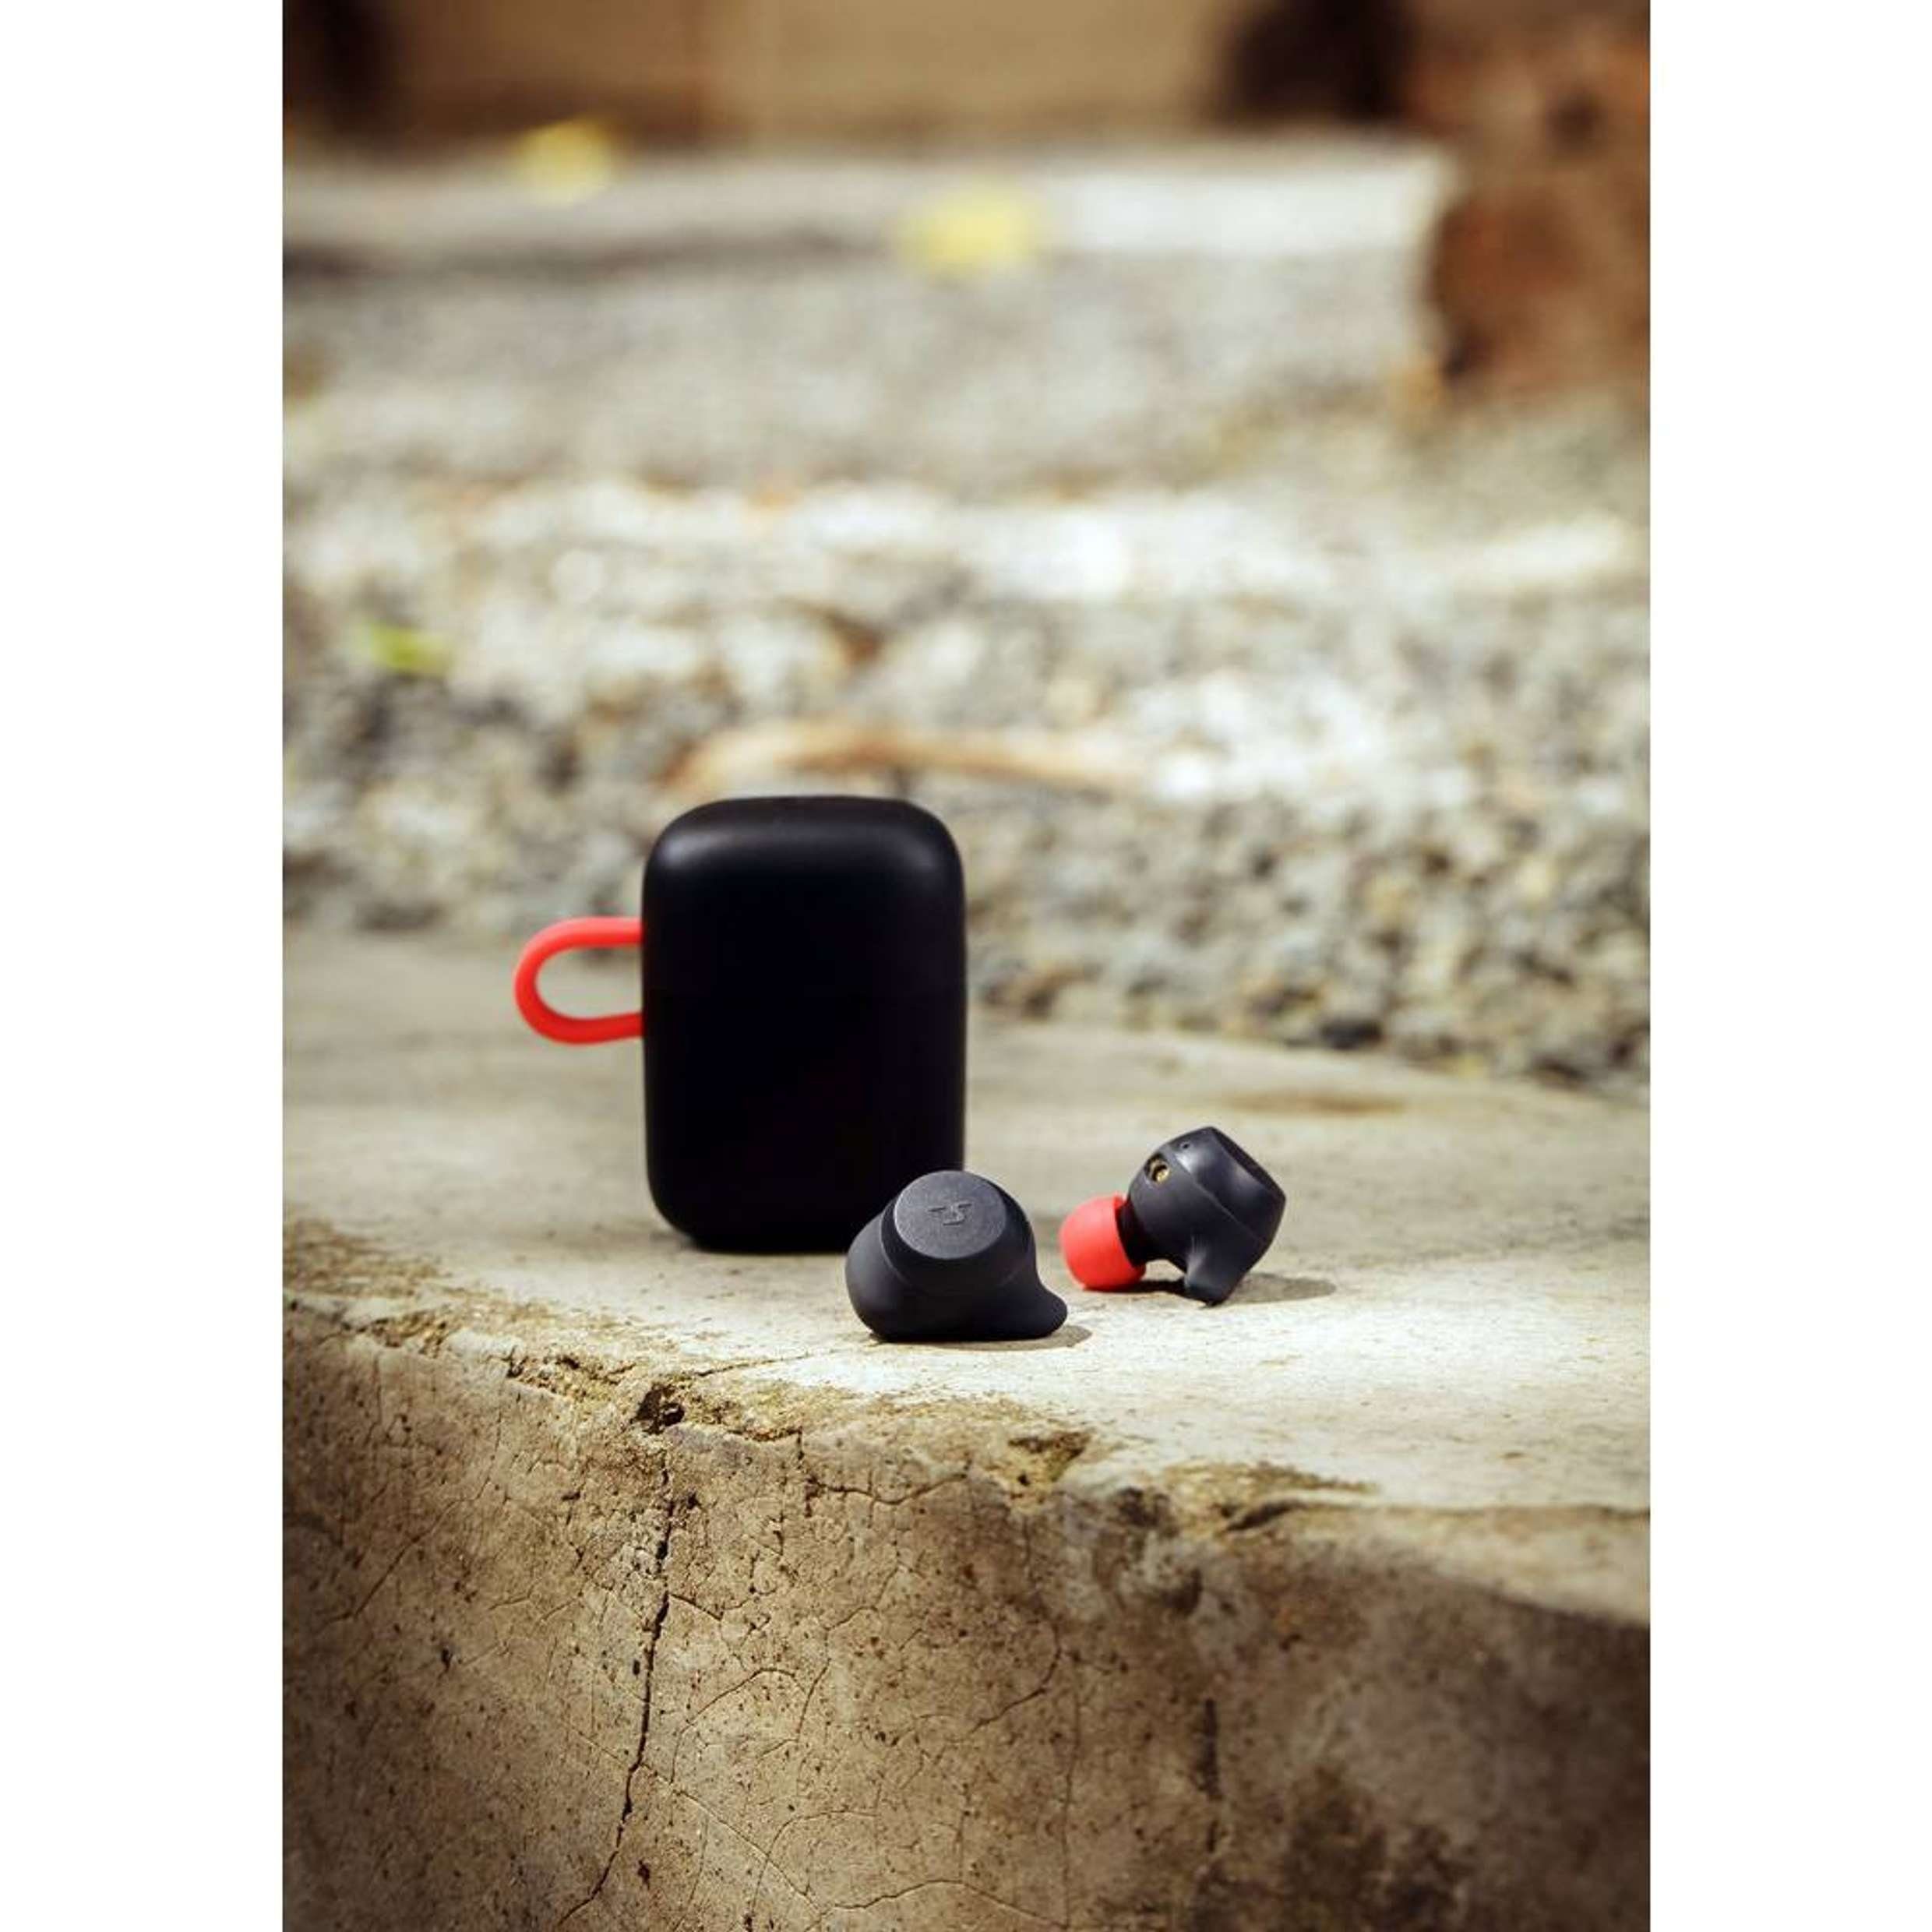 NABO T Sport In-Ear-Kopfhörer wireless IPX6-Wasserdicht) (Bluetooth